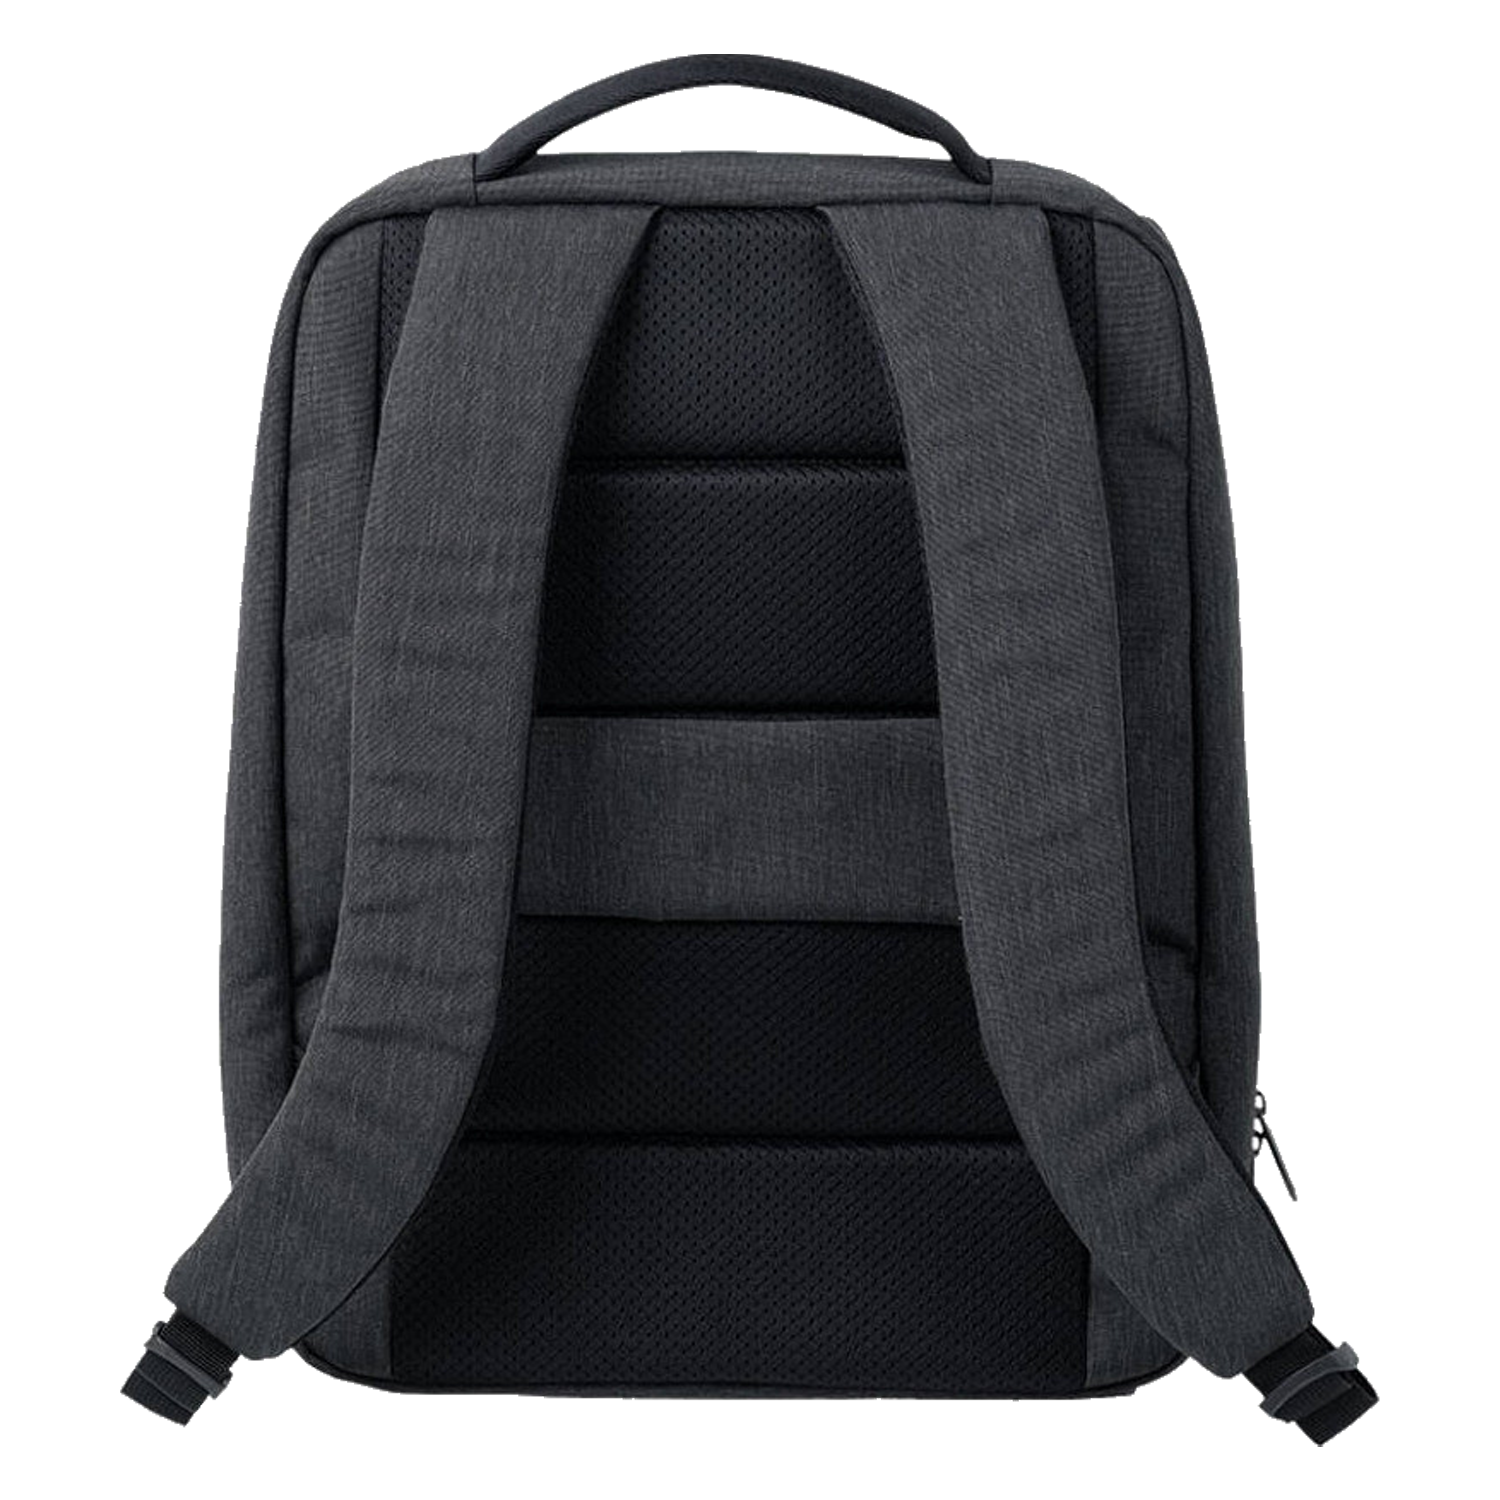 Mochila Xiaomi Mi City Backpack 2 - Dark Gray (ZJB4192GL)